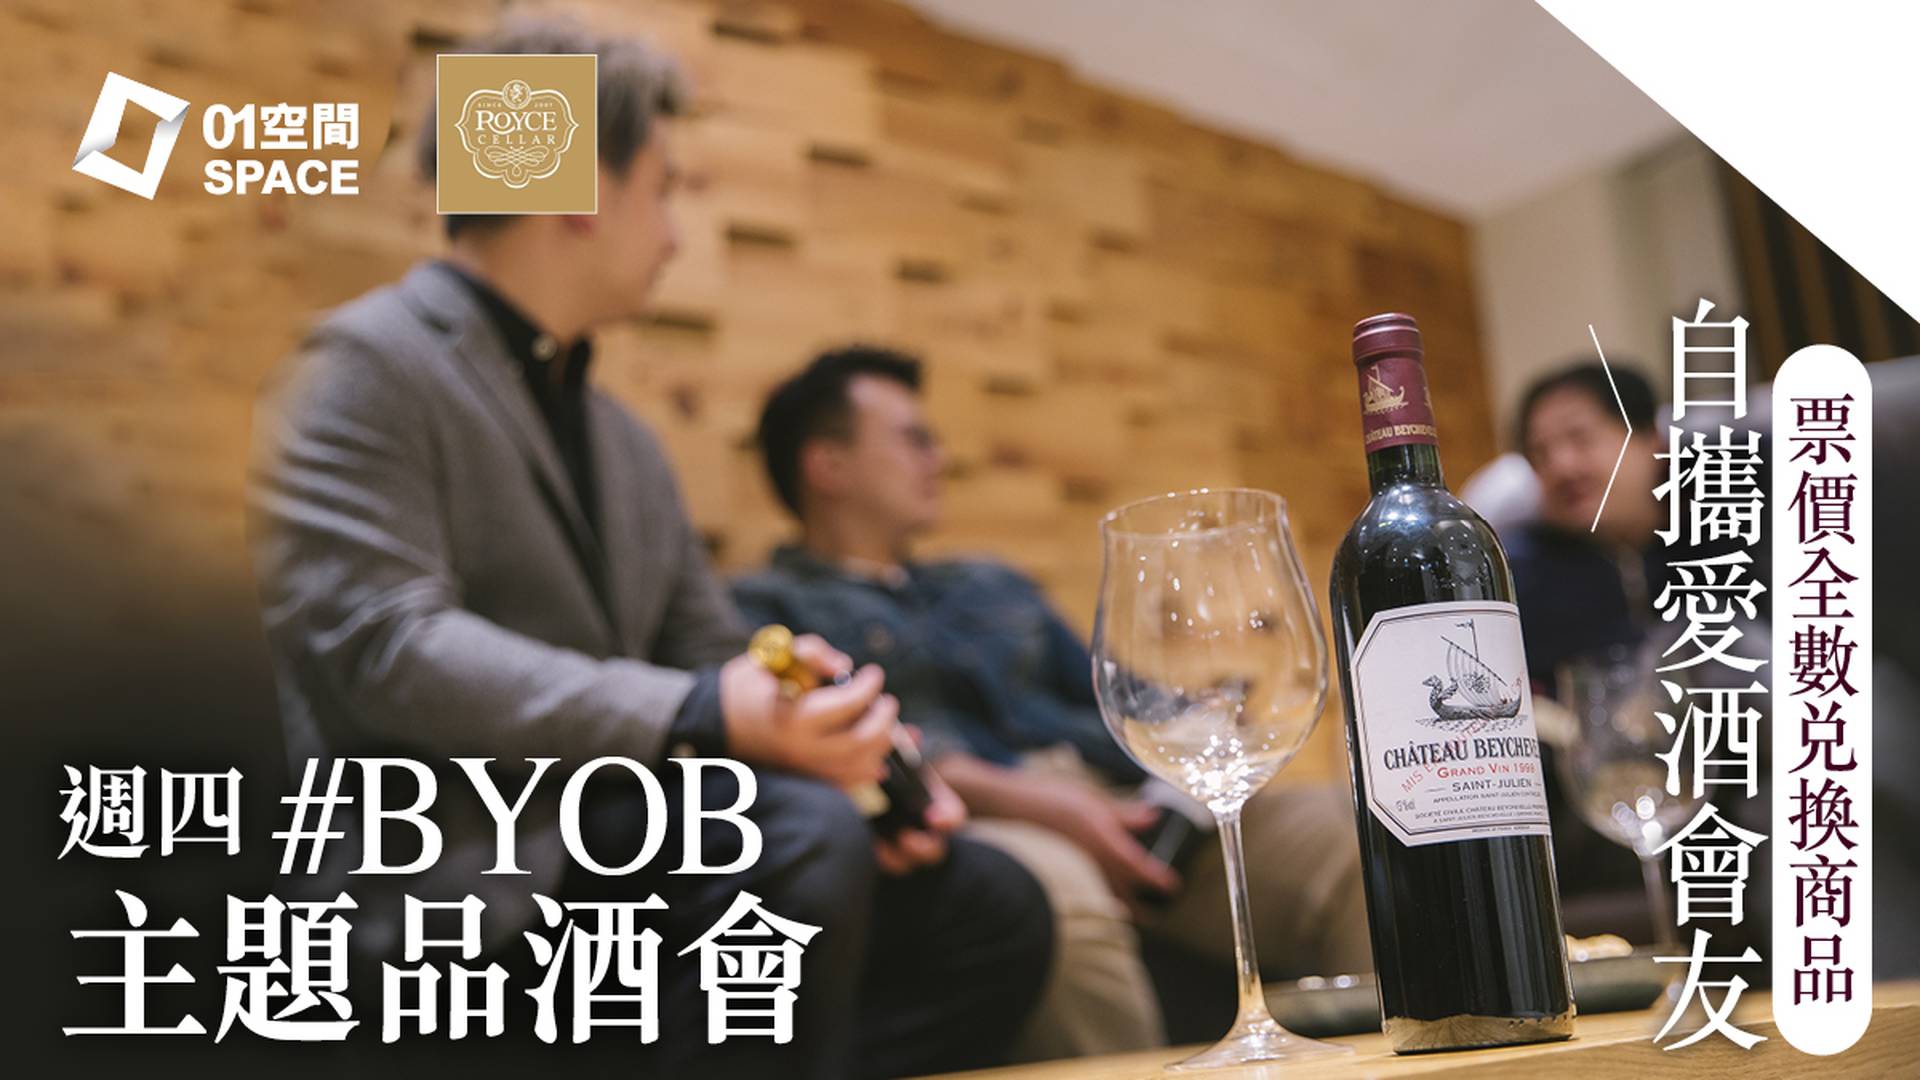 01空間 X Royce Cellar ：週四 "零票價" #BYOB 主題品酒會｜尖沙咀打卡酒窖 Ｗine Peers Wine Tasting